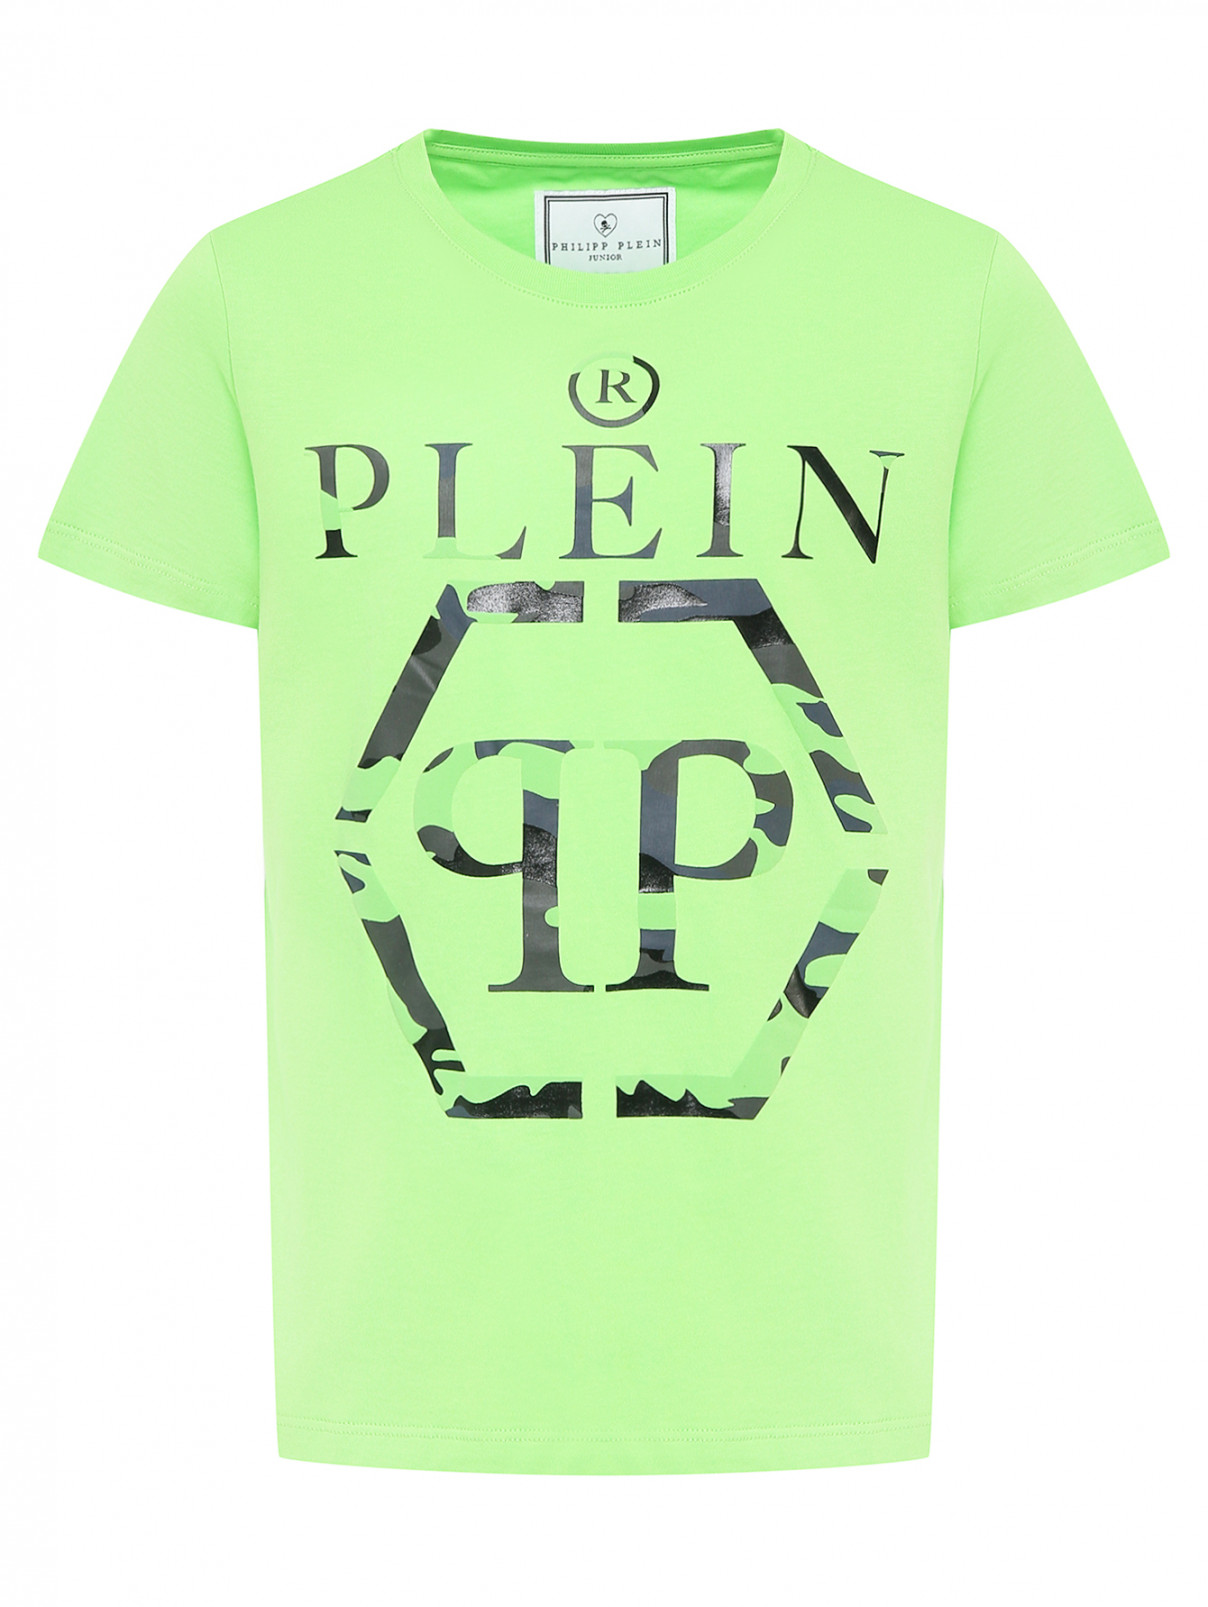 Хлопковая футболка с принтом Philipp Plein  –  Общий вид  – Цвет:  Зеленый